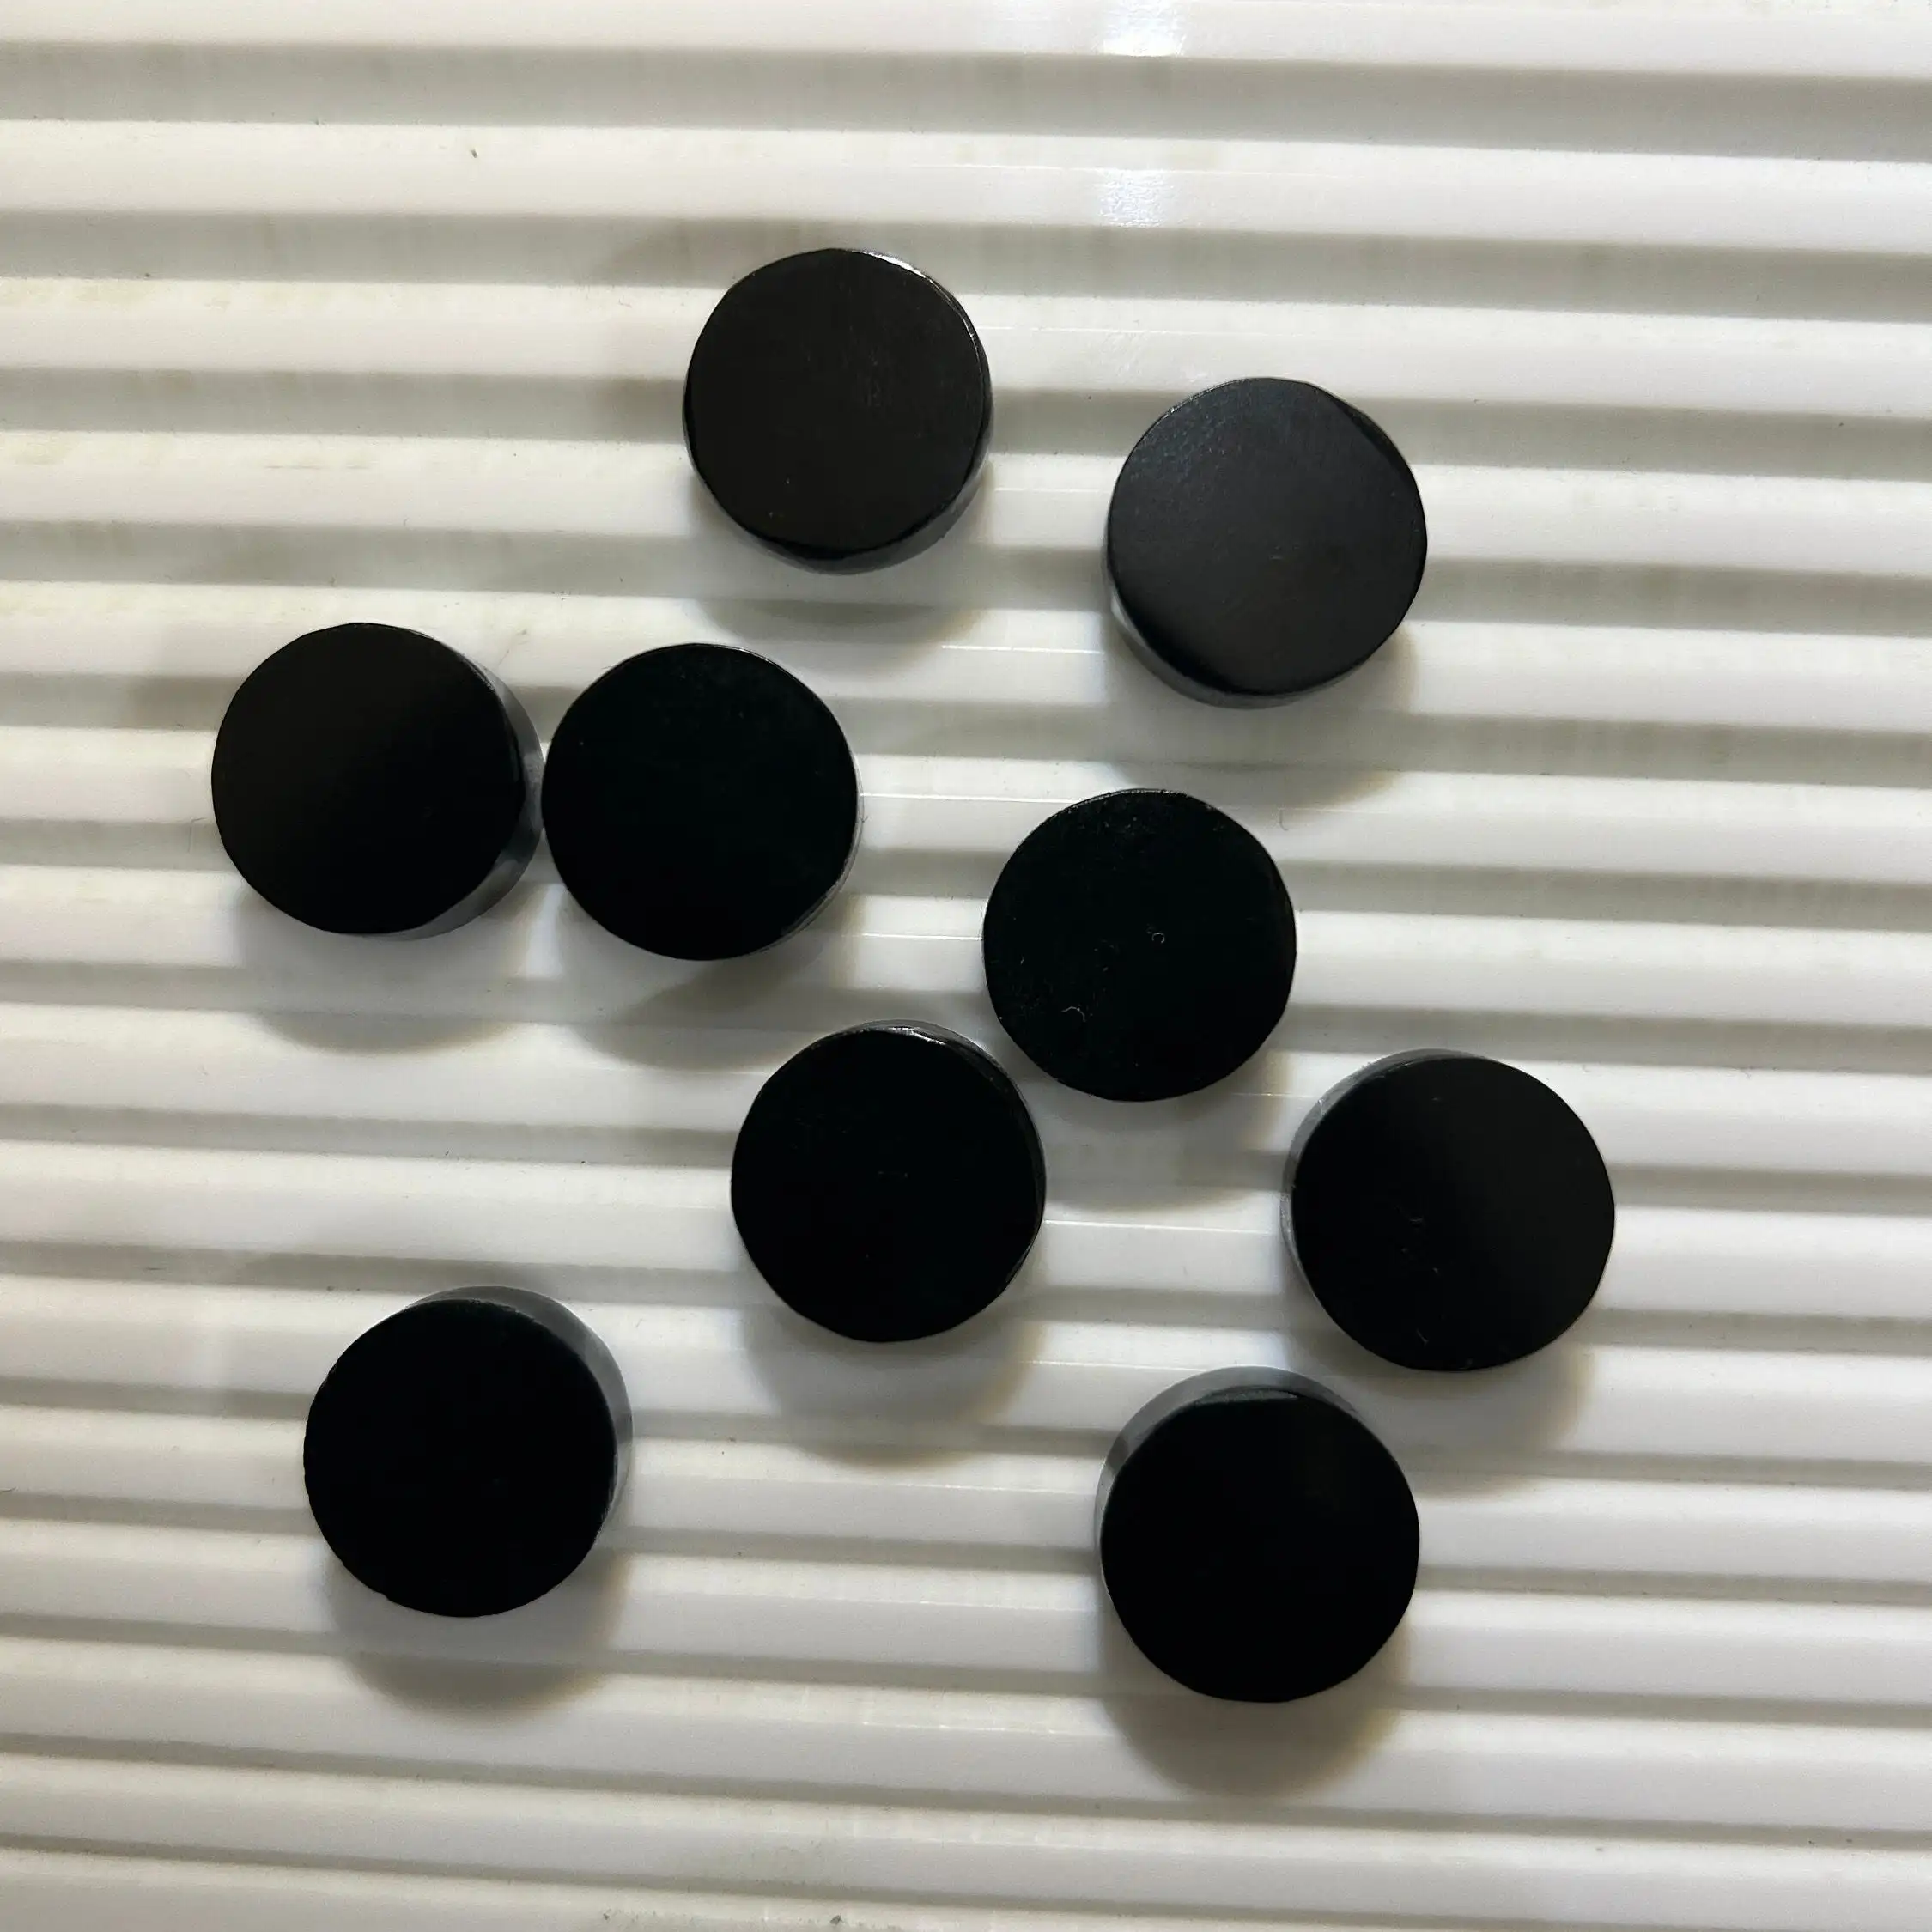 5 حتى 30 ملم عقيق السدج الأسود الطبيعي على كلا الجانبين شكل مسطح بشكل دائري عملة كابوشون عقيق السدج الأسود الطبيعي حجر كريم فضفاض لصنع المجوهرات